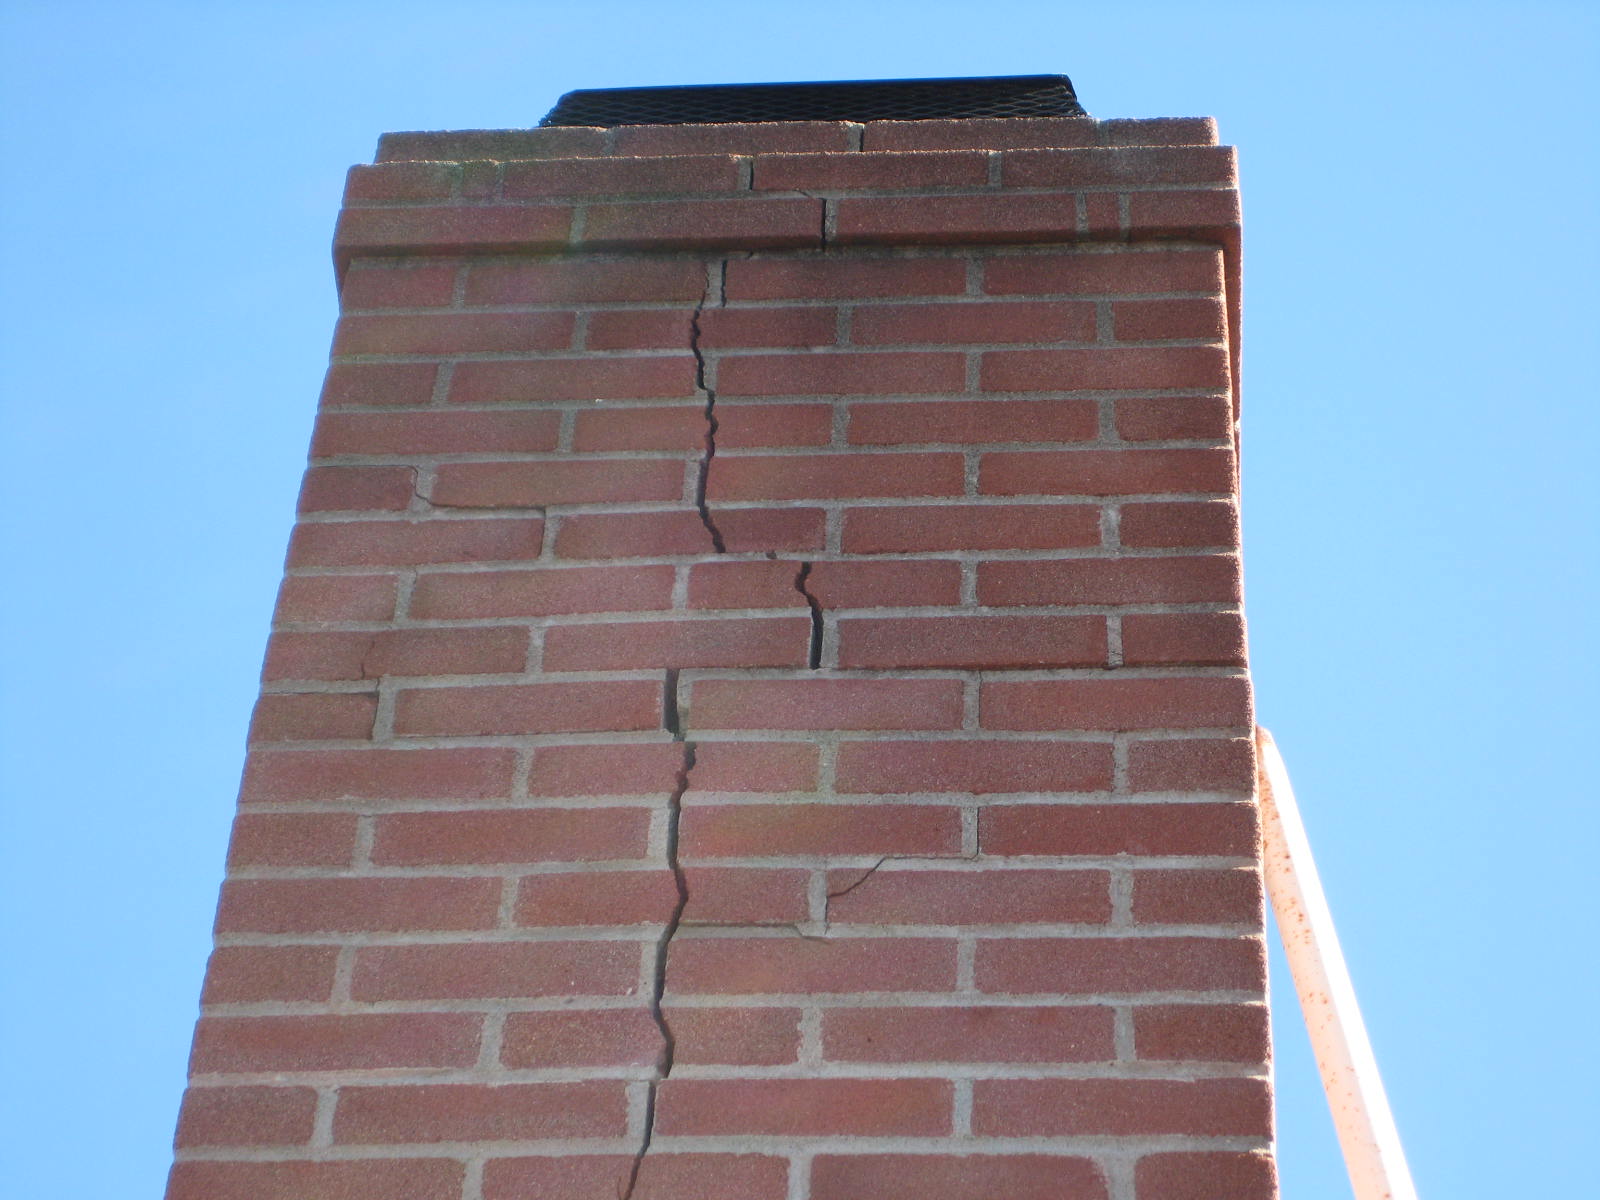 Seismic damage to chimney- Fire hazard